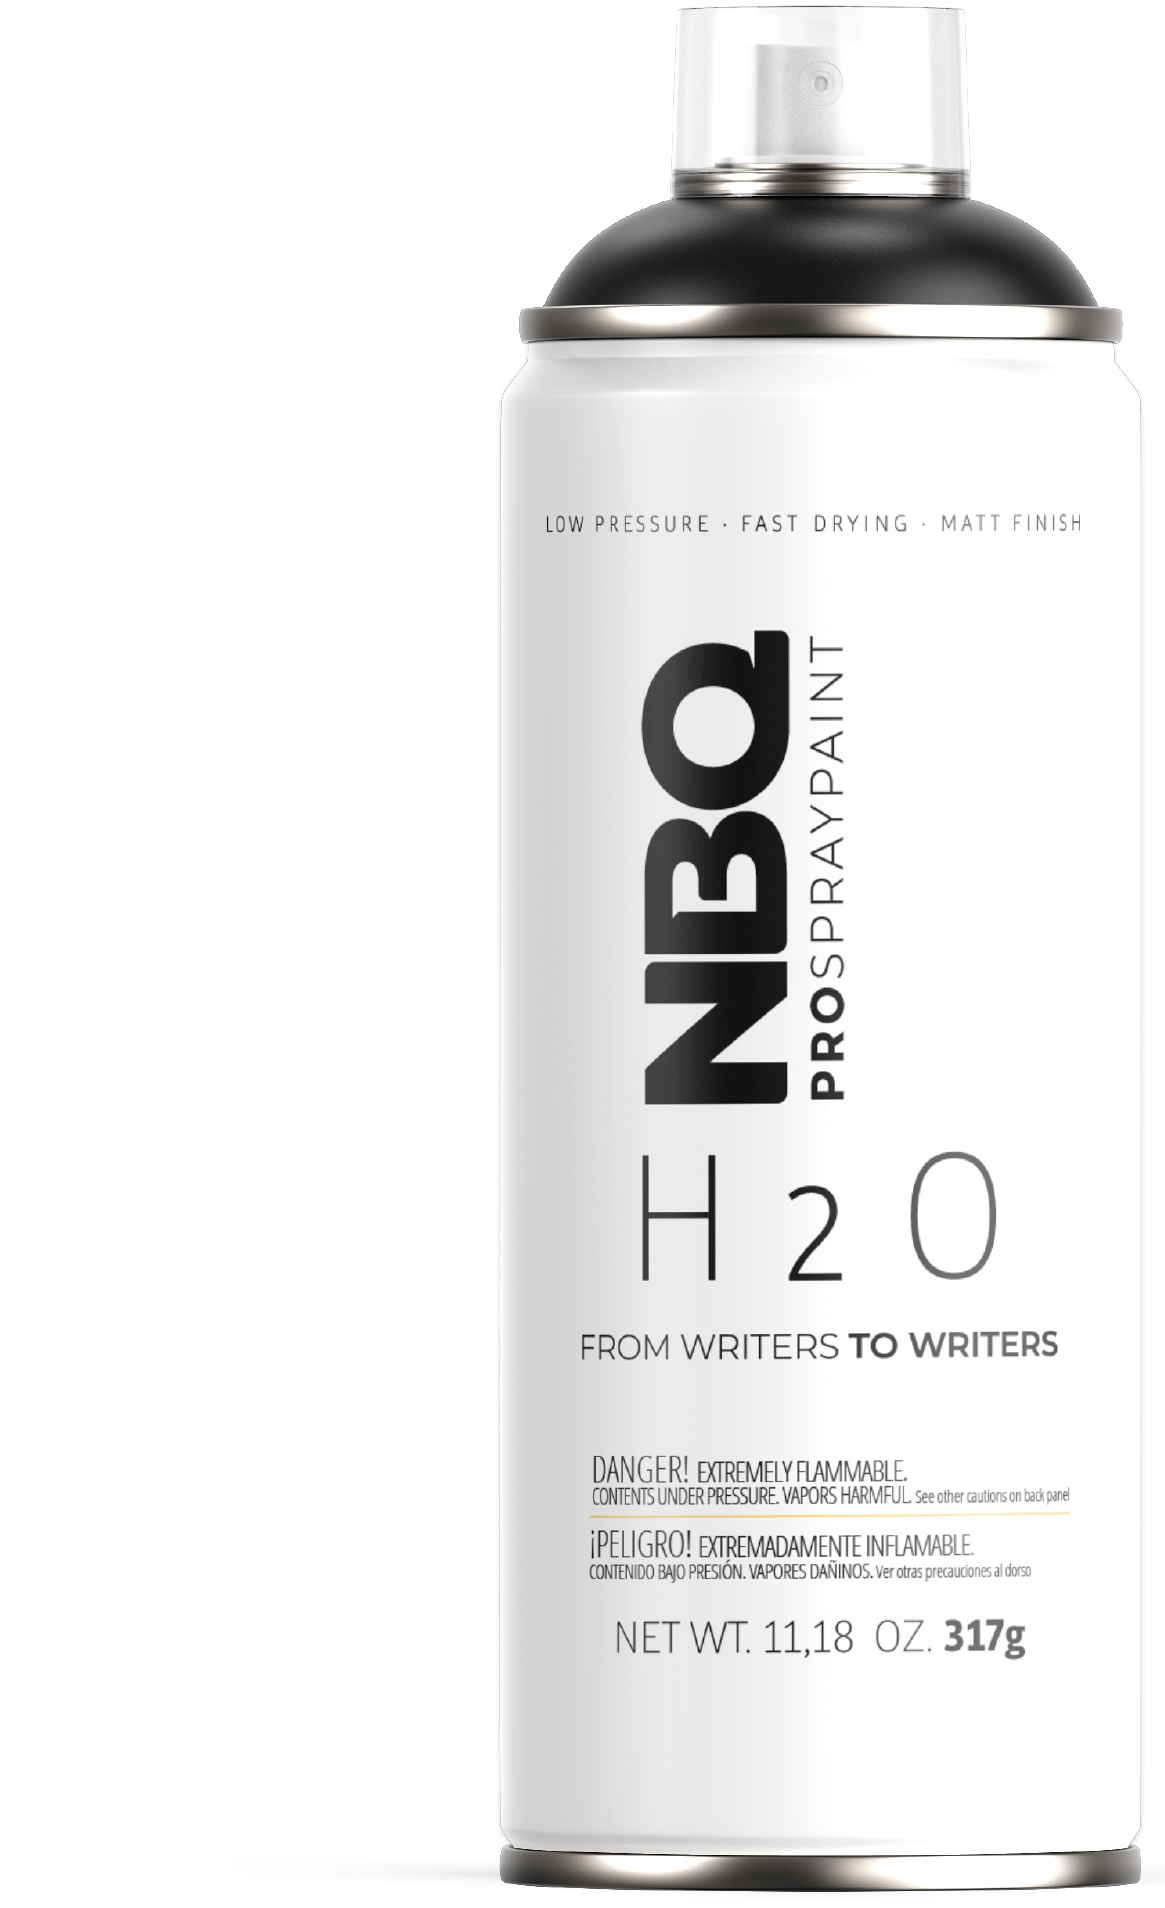 Obrázek: h2o-product